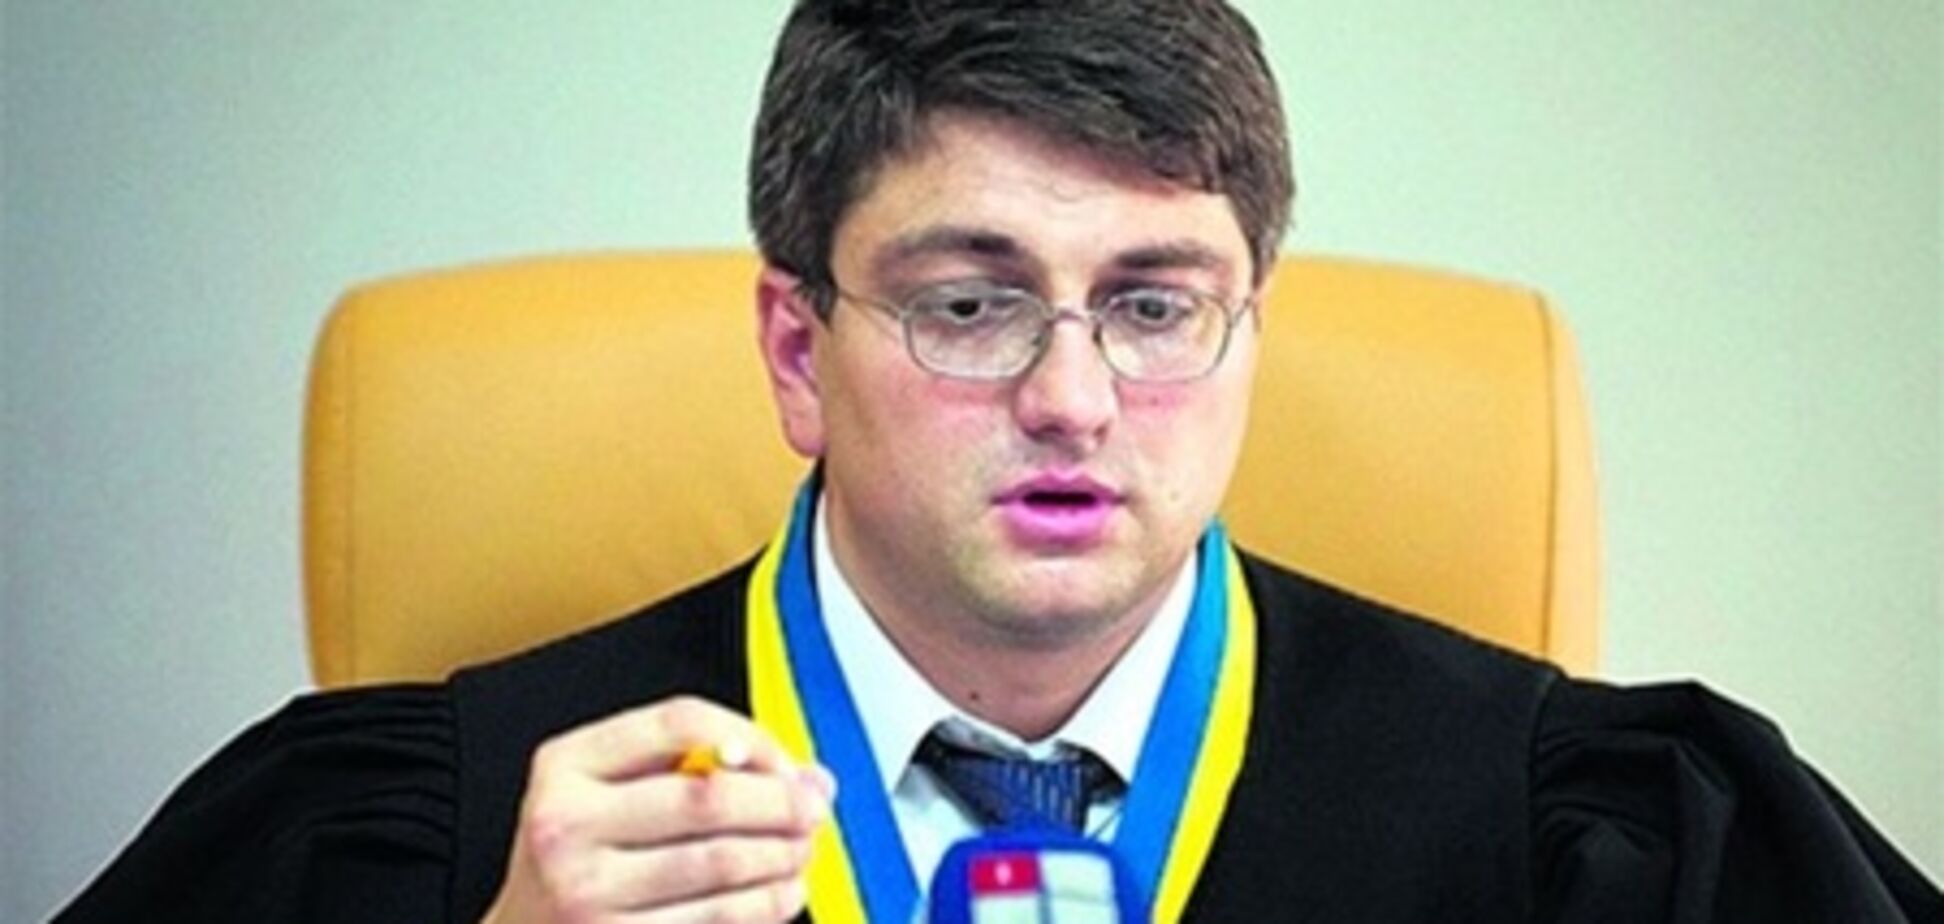 Кірєєв вигнав із залу суду депутата Чорноволенка